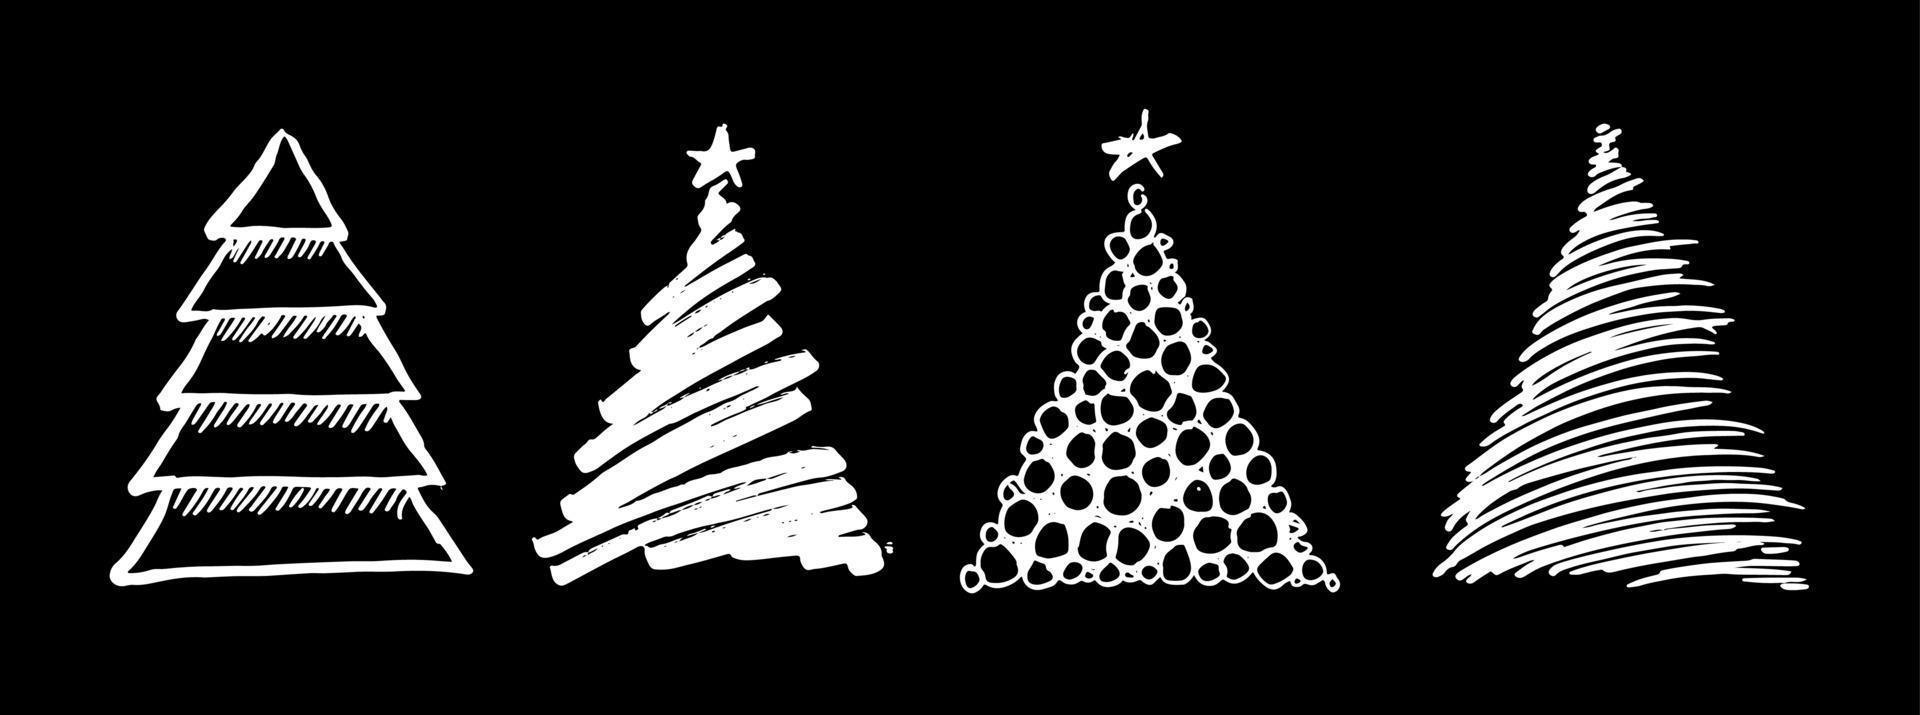 diseño de árbol de Navidad, conjunto de vectores. vector